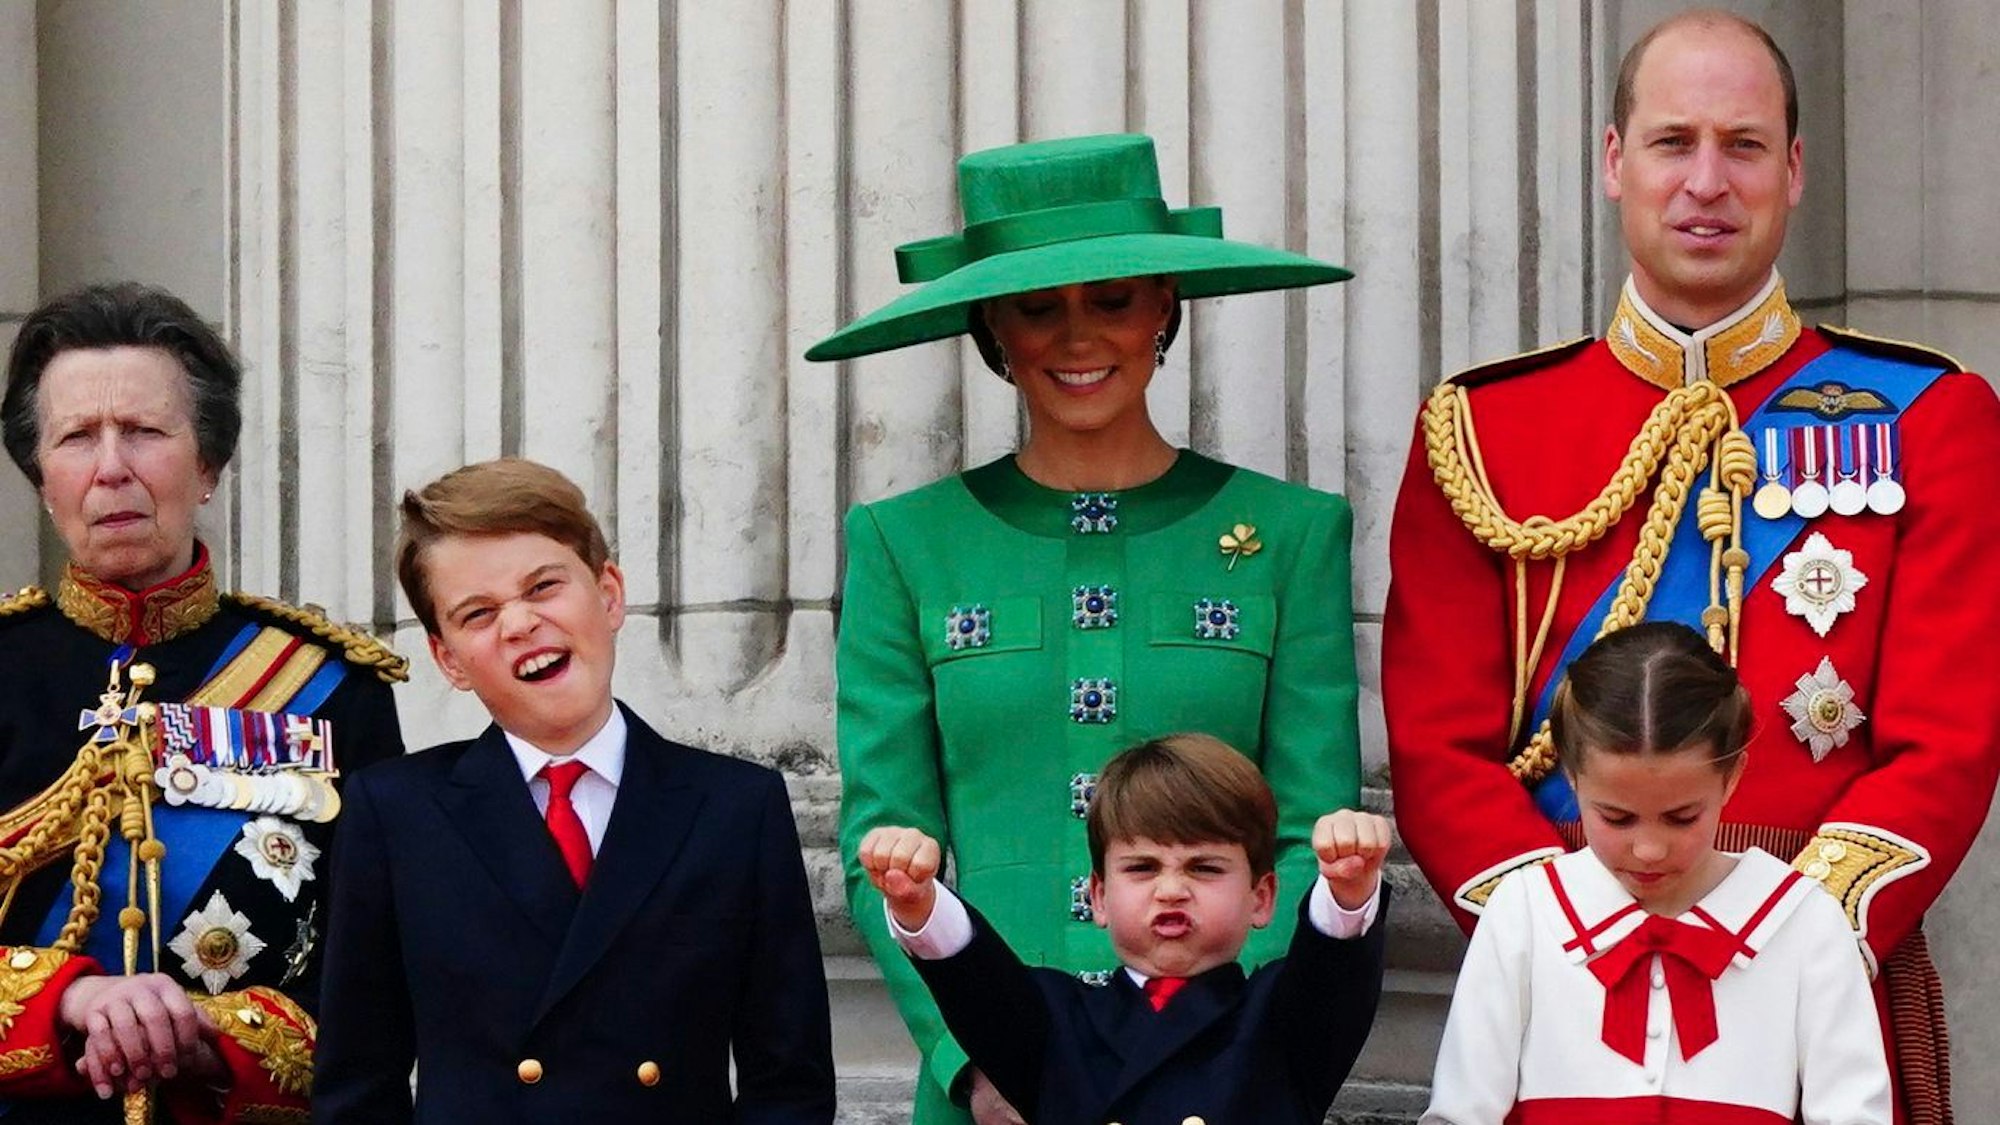 Prinzessin Anne (l), Prinzessin Kate (m), Prinz William (r) und ihre Kinder Prinz George, Prinz Louis jund Prinzessin Charlotte (vorne) auf dem Balkon des Buckingham Palace.